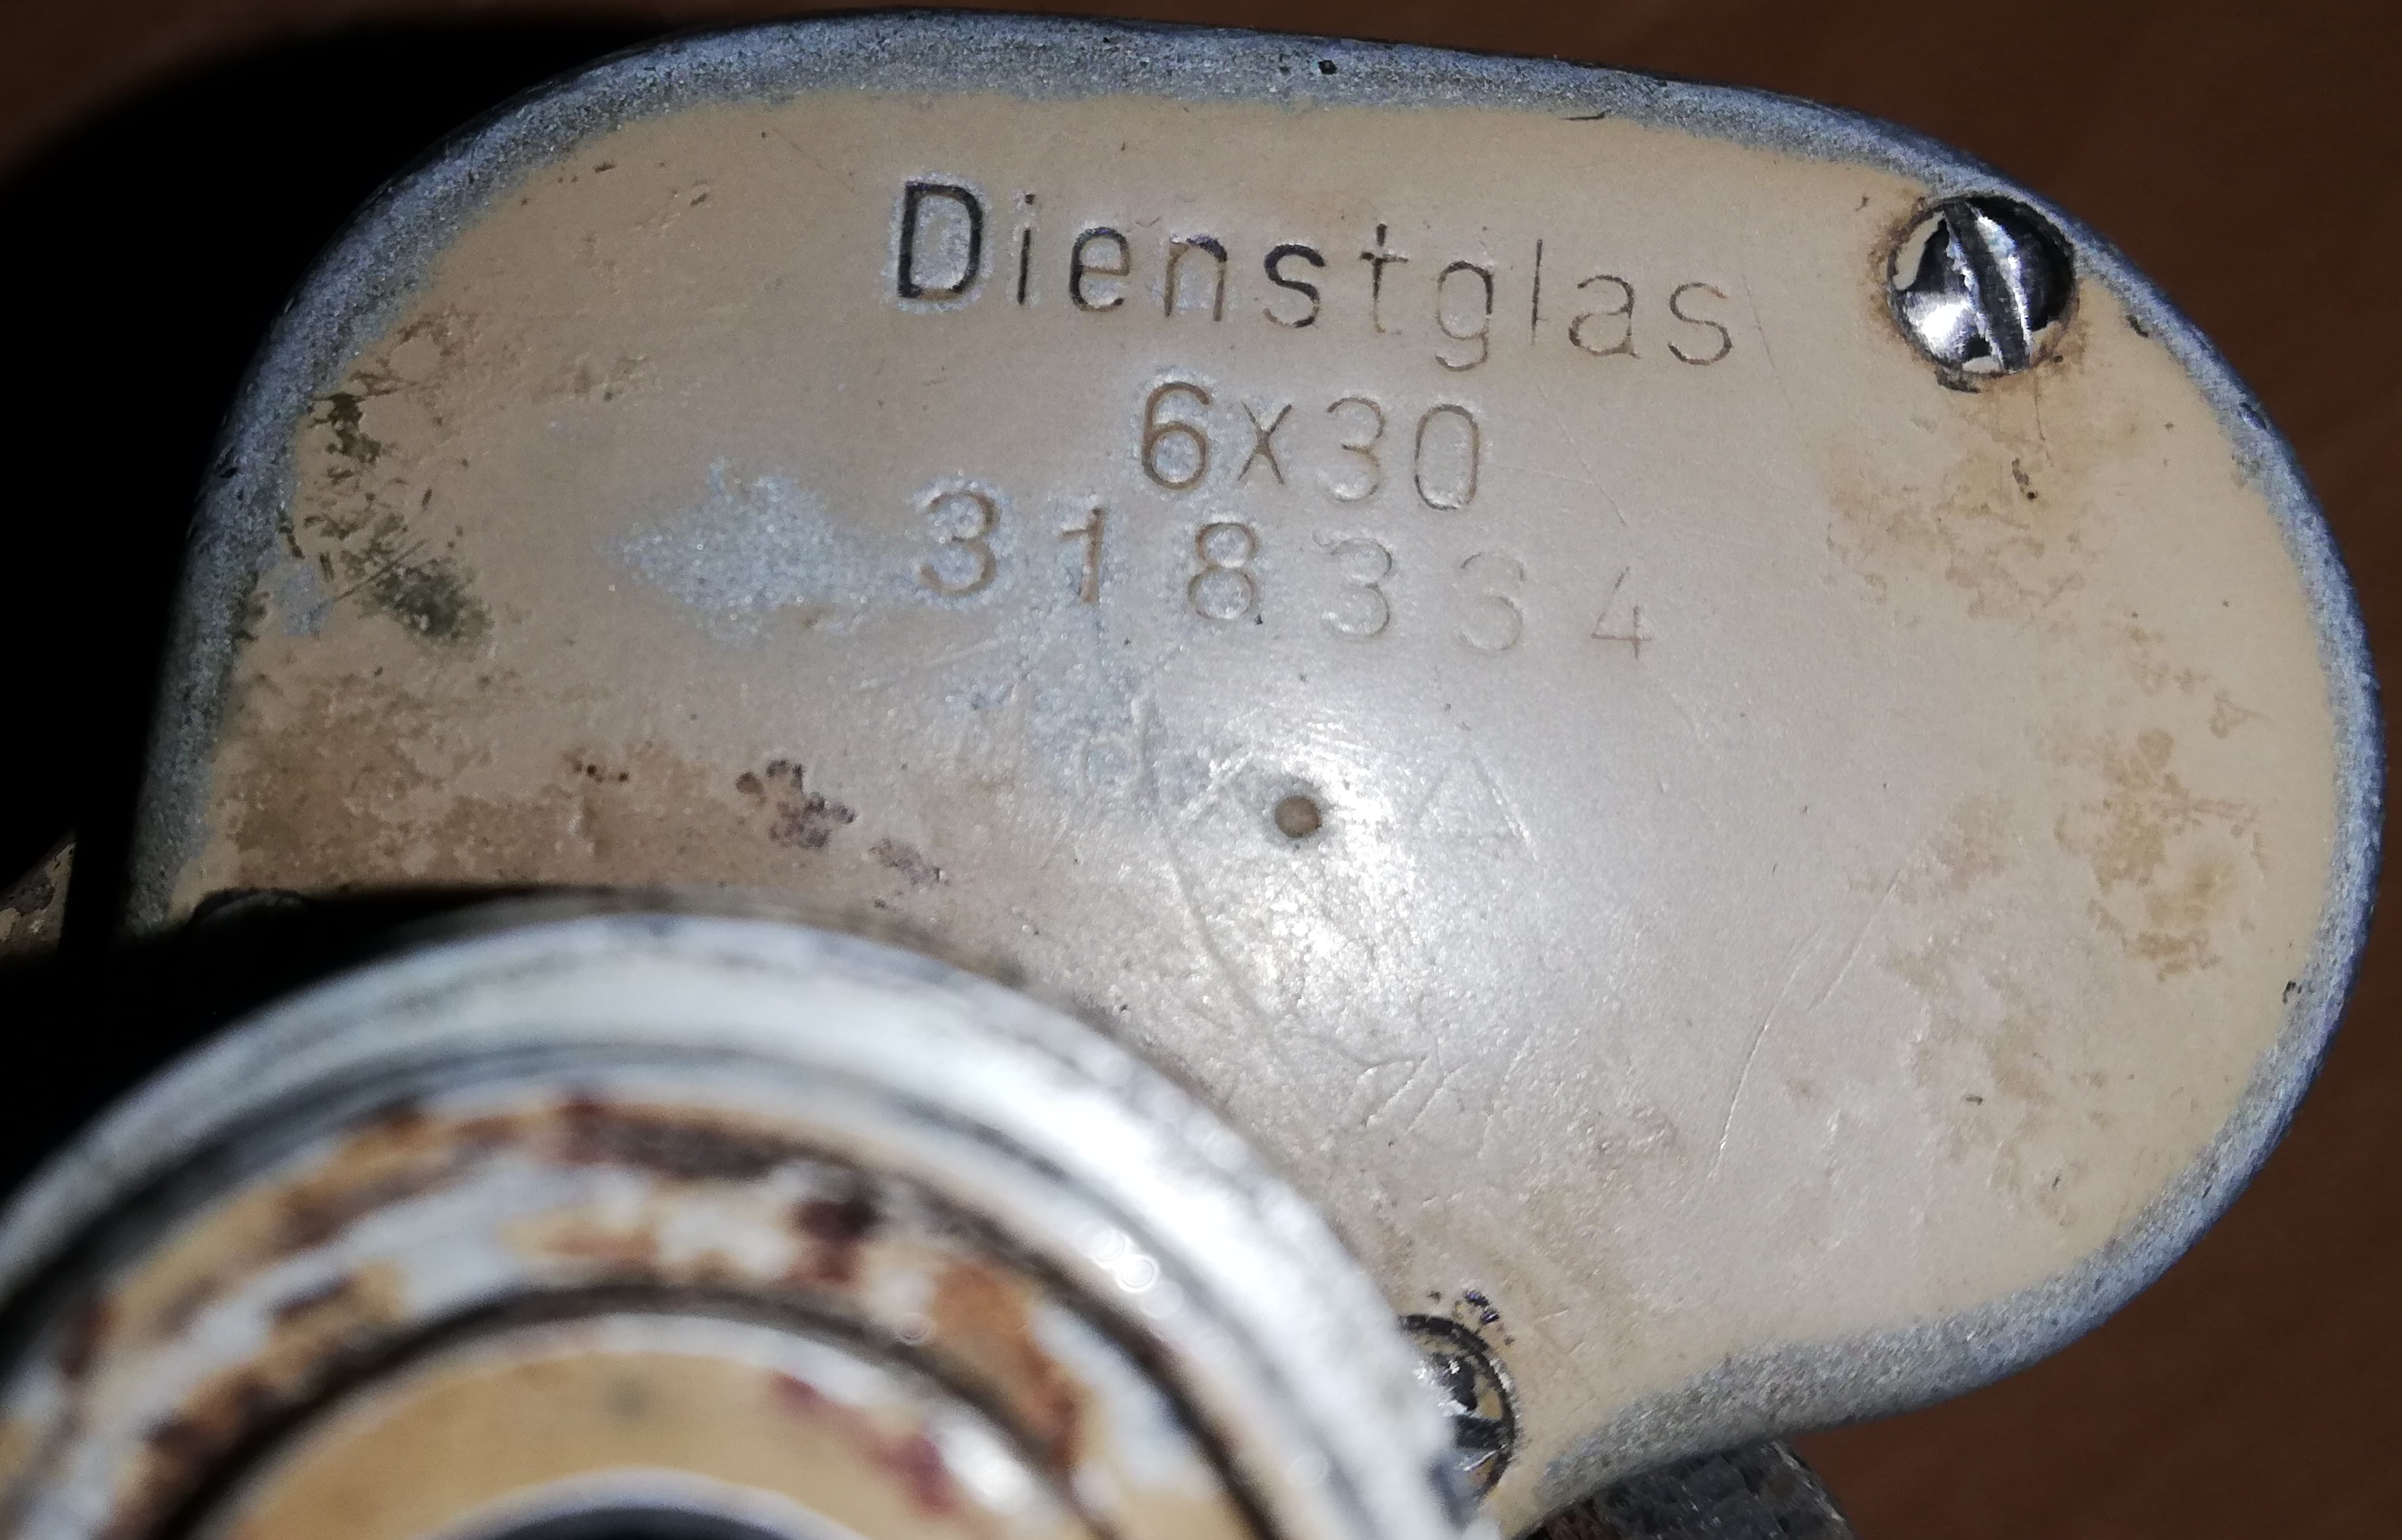 dienstglas 6x30 ddx serial numbers